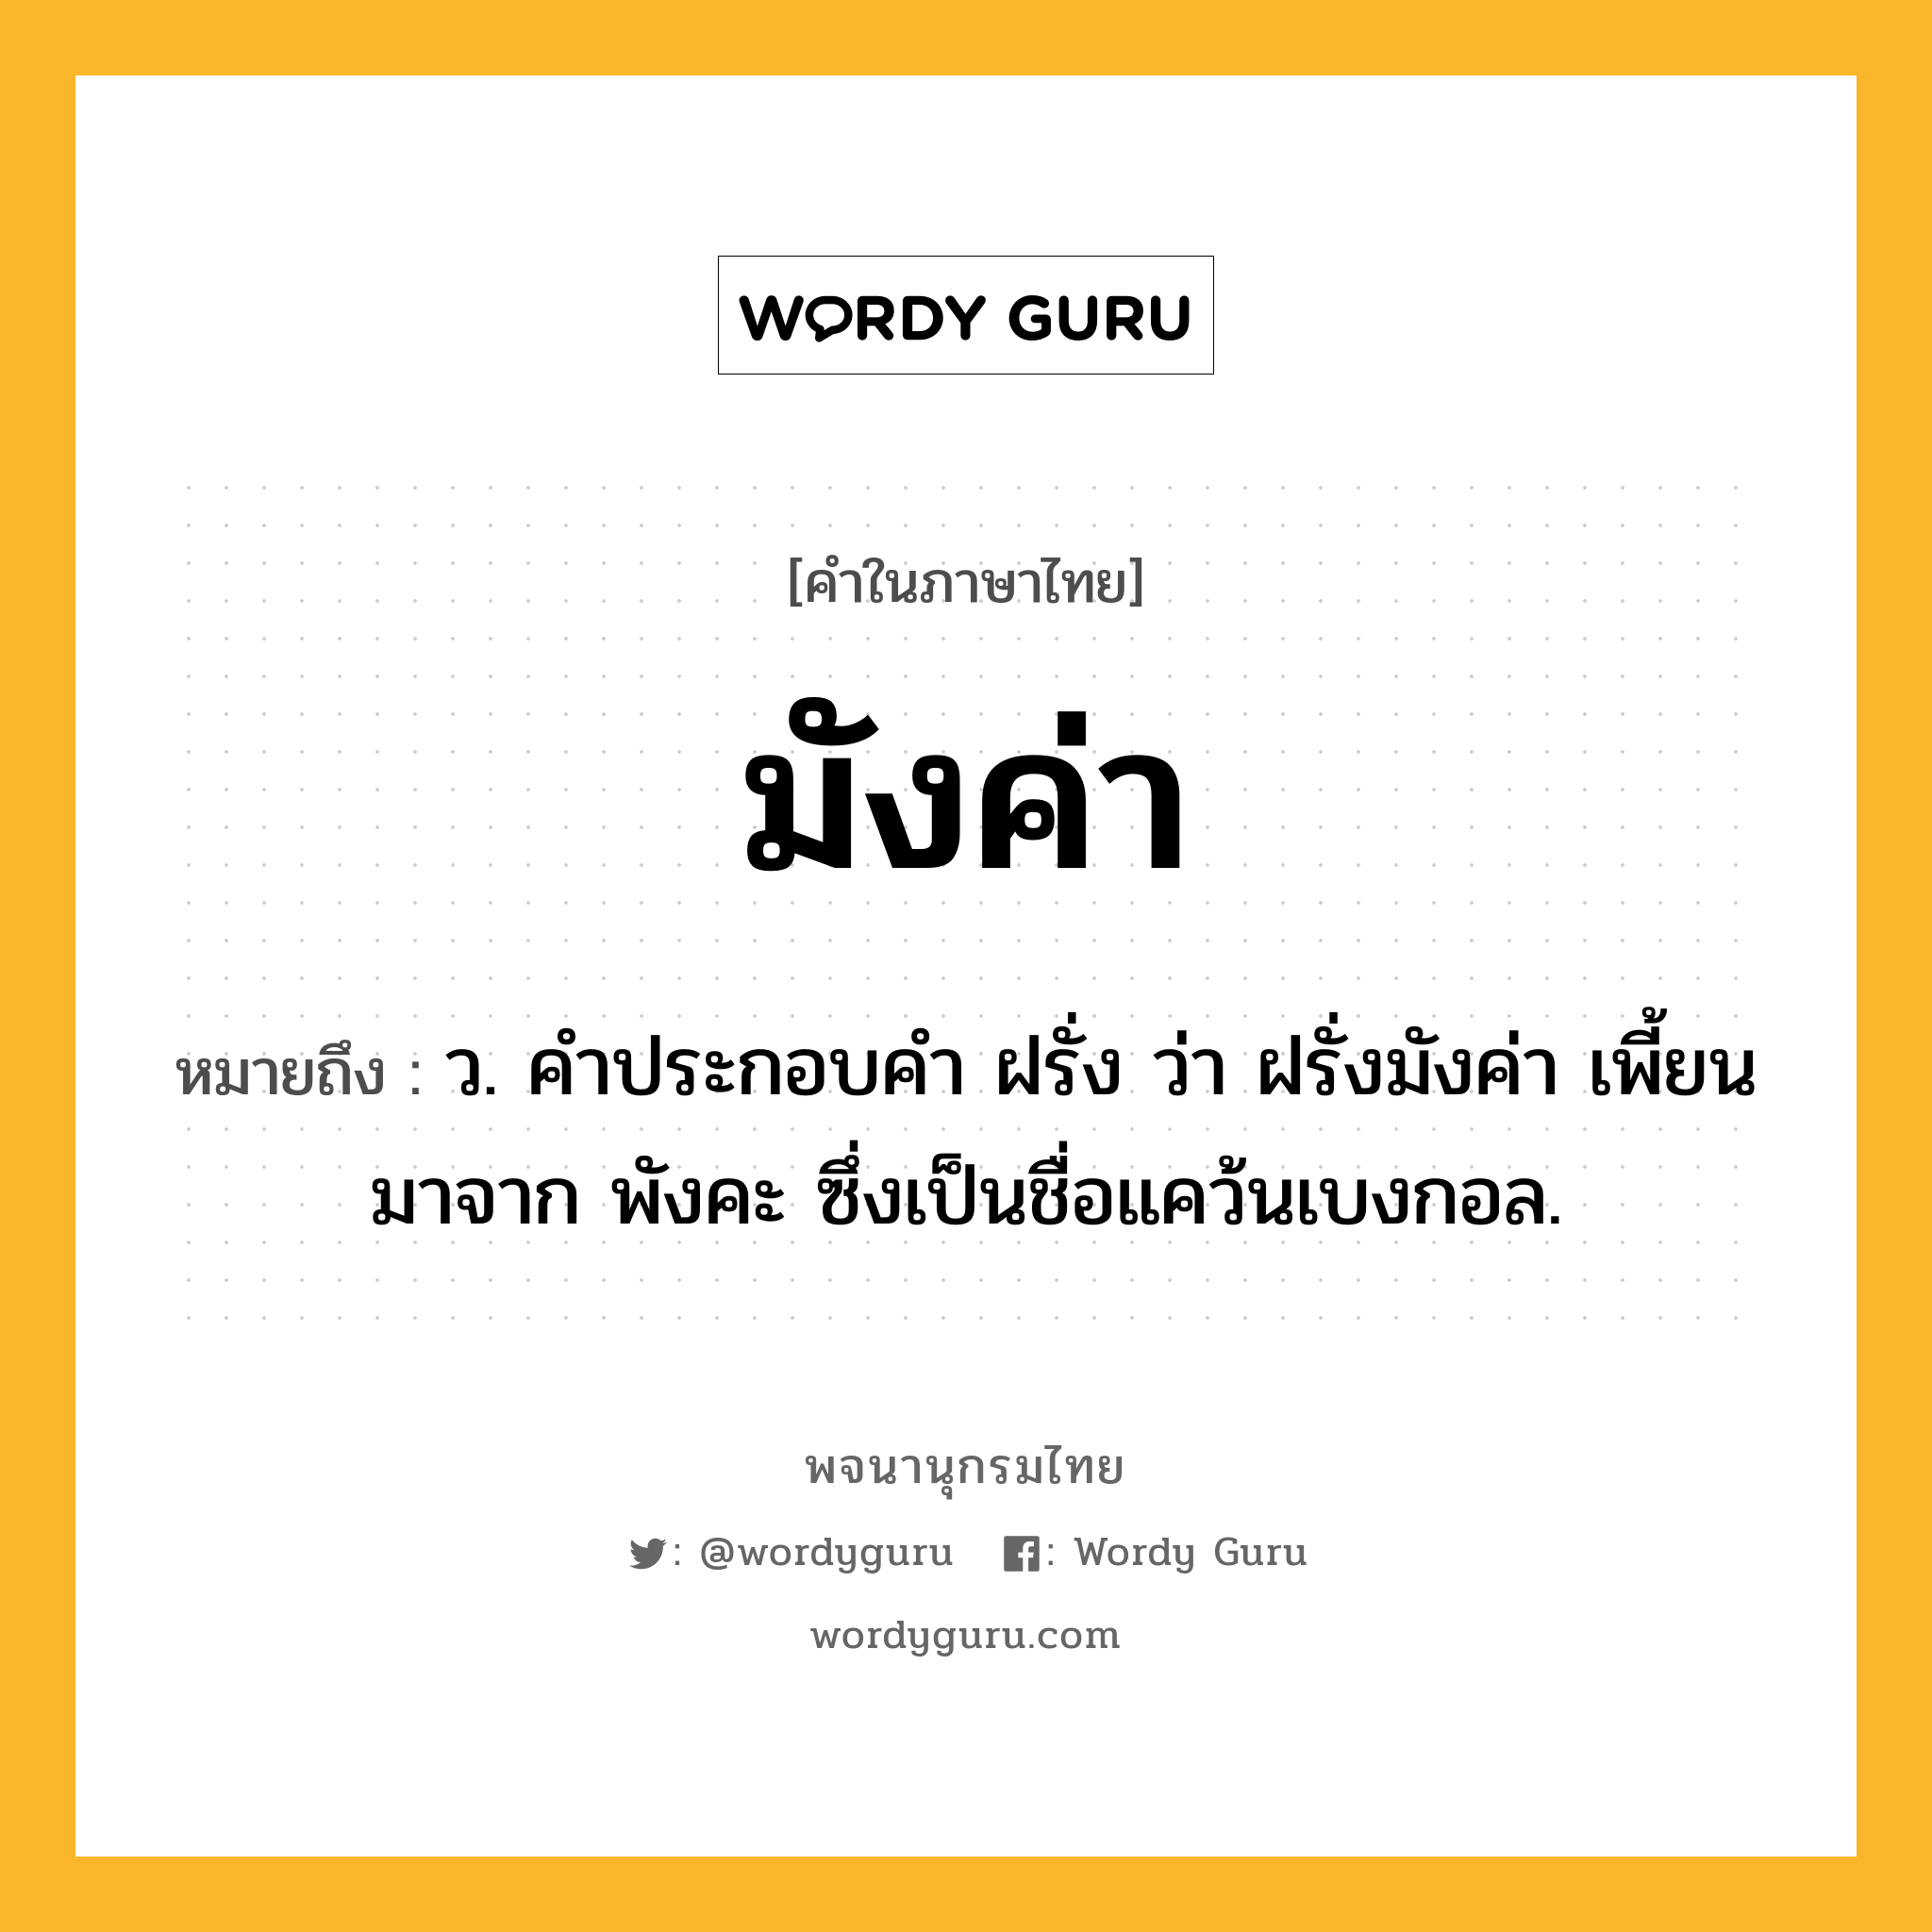 มังค่า ความหมาย หมายถึงอะไร?, คำในภาษาไทย มังค่า หมายถึง ว. คําประกอบคํา ฝรั่ง ว่า ฝรั่งมังค่า เพี้ยนมาจาก พังคะ ซึ่งเป็นชื่อแคว้นเบงกอล.